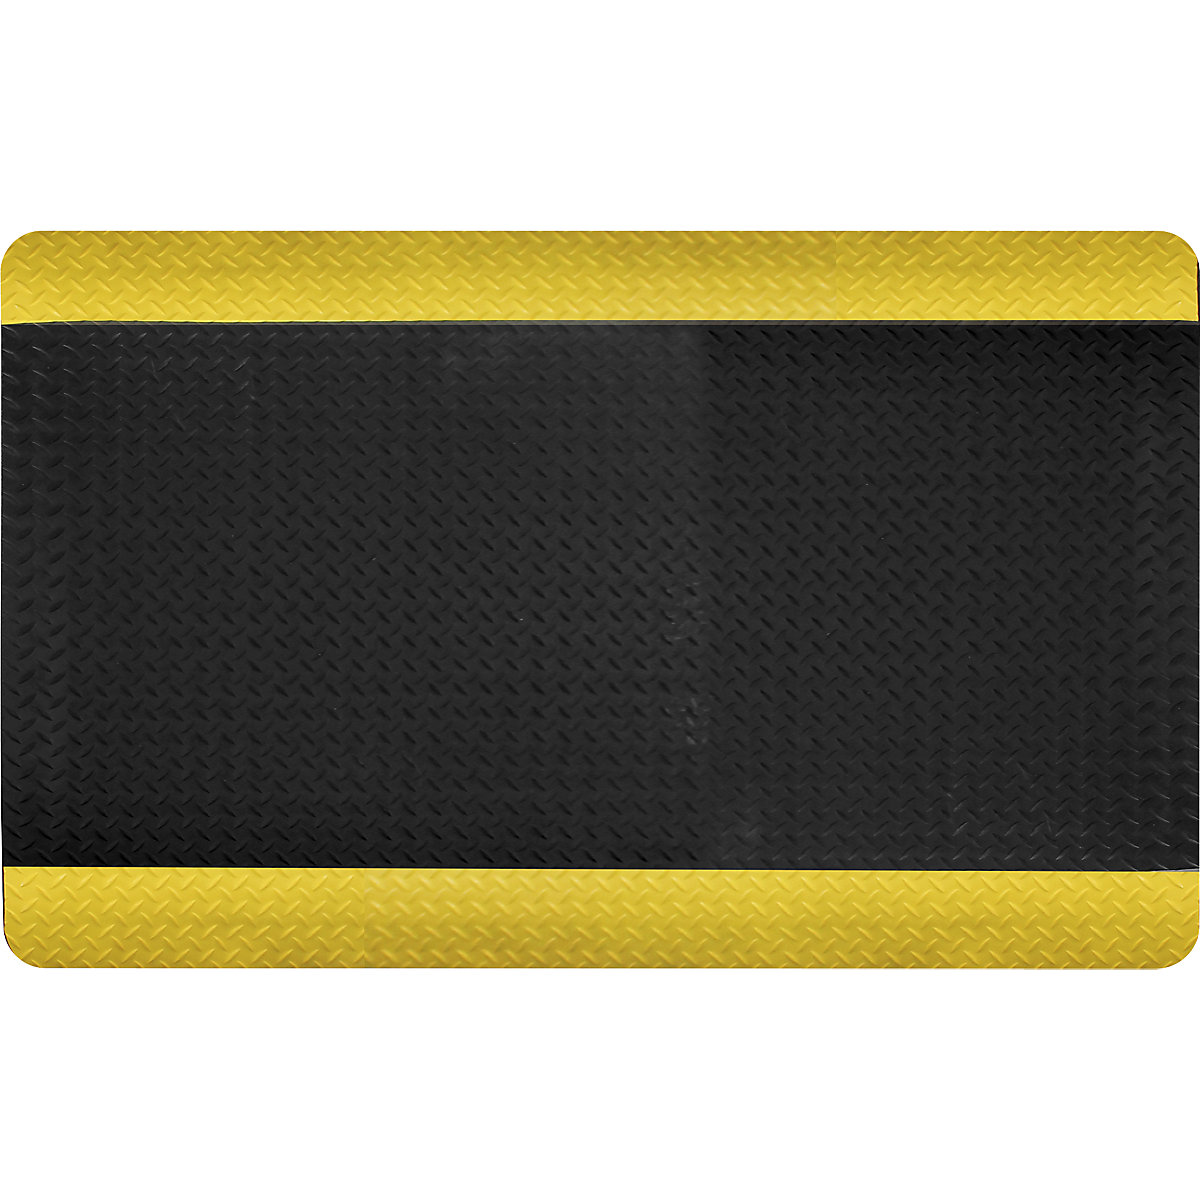 DECKPLATE anti-fatigue matting, cut to order, black / yellow, per m. x 600 mm, max. 18.3 m